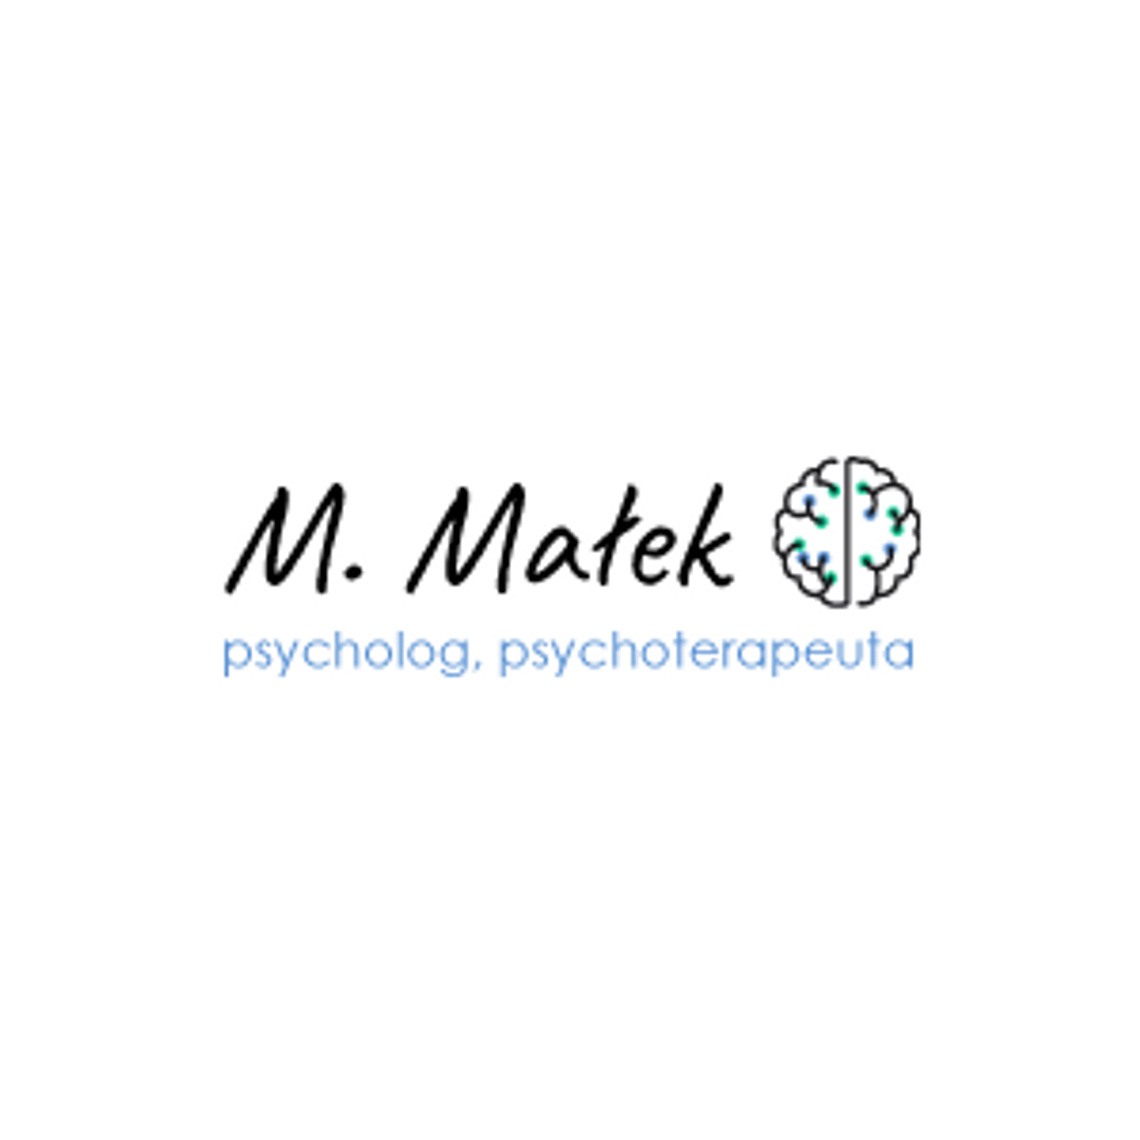 Małgorzata Małek – psycholog i psychoterapeuta